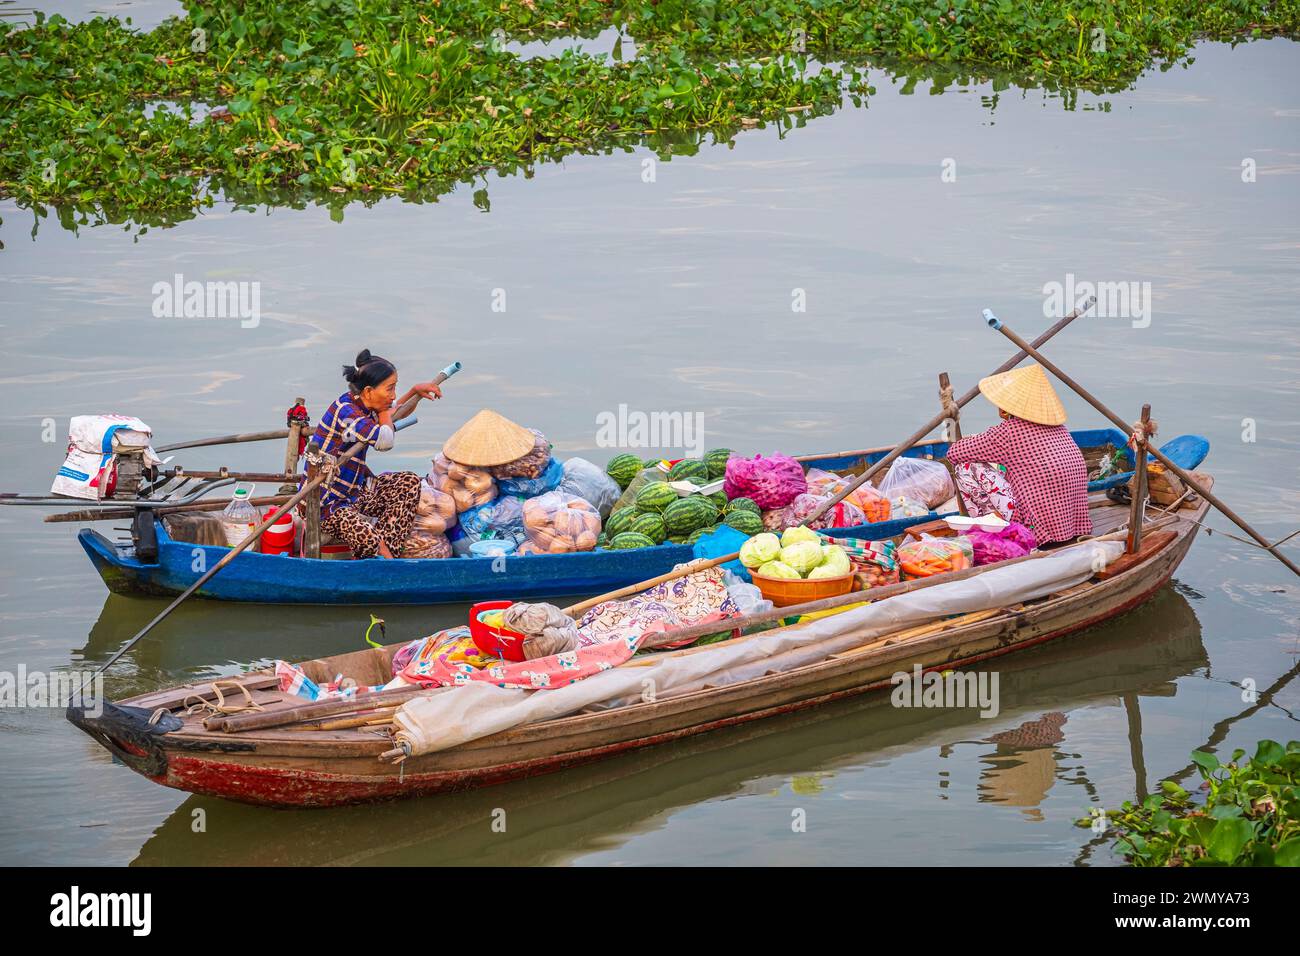 Vietnam, Mekong Delta, Cai Rang Bezirk, Cai Rang schwimmenden Markt am Can Tho Fluss Stockfoto